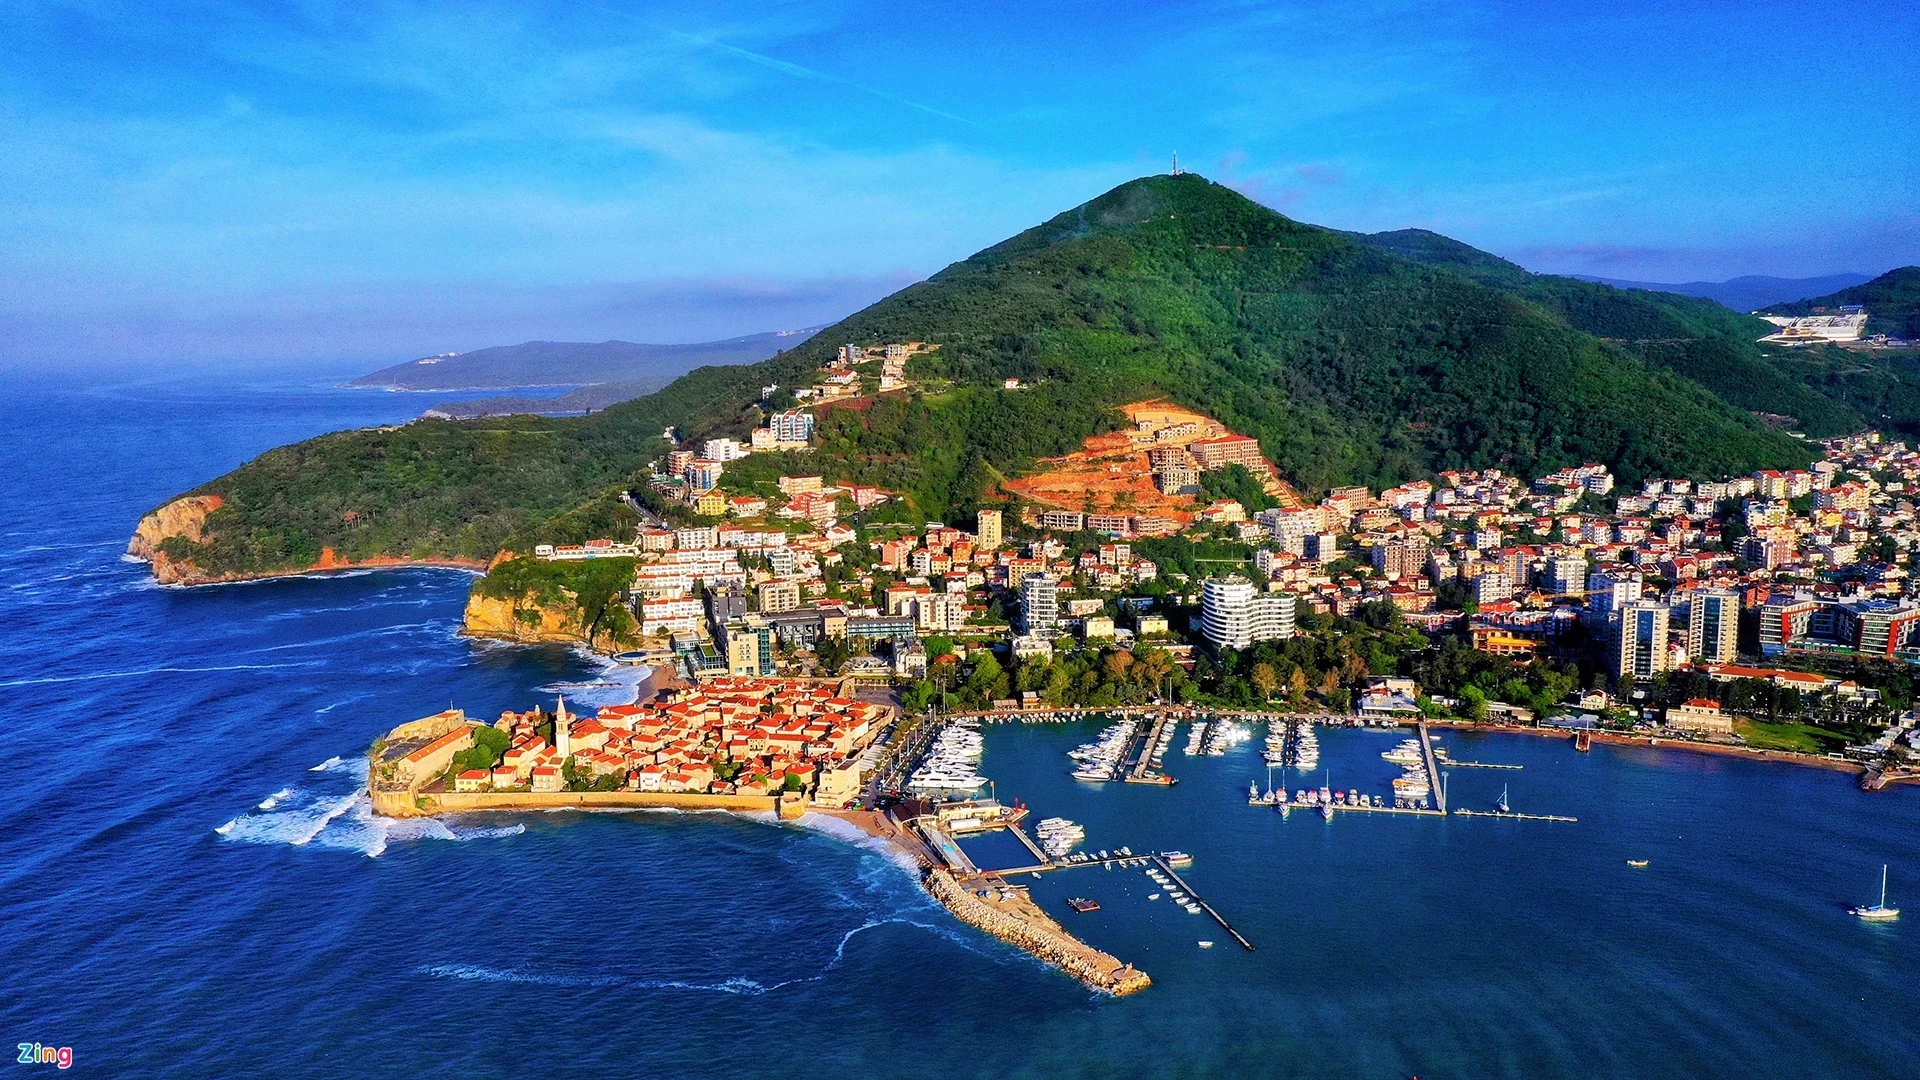 Tháng 6 tới miền đất Montenegro. Điểm đến chính ở quốc gia này là vịnh Kotor. Vịnh ăn sâu vào đất liền tới 30 km, từng là nơi ẩn náu của những tên cướp biển và các đội quân xâm lược. Ngày nay, vịnh nằm trong danh sách được bảo vệ của UNESCO, là điểm đến của các chuyến tàu du lịch biển. Núi cao sát bờ là cảnh nền hoàn hảo cho các bức ảnh du lịch. Gần như toàn bộ diện tích Montenegro là núi đồi. Núi dốc thẳng xuống bờ biển Adriatic ở phía nam và sang phía bắc lại dốc thẳng lên, tạo thành những đỉnh cao vút.